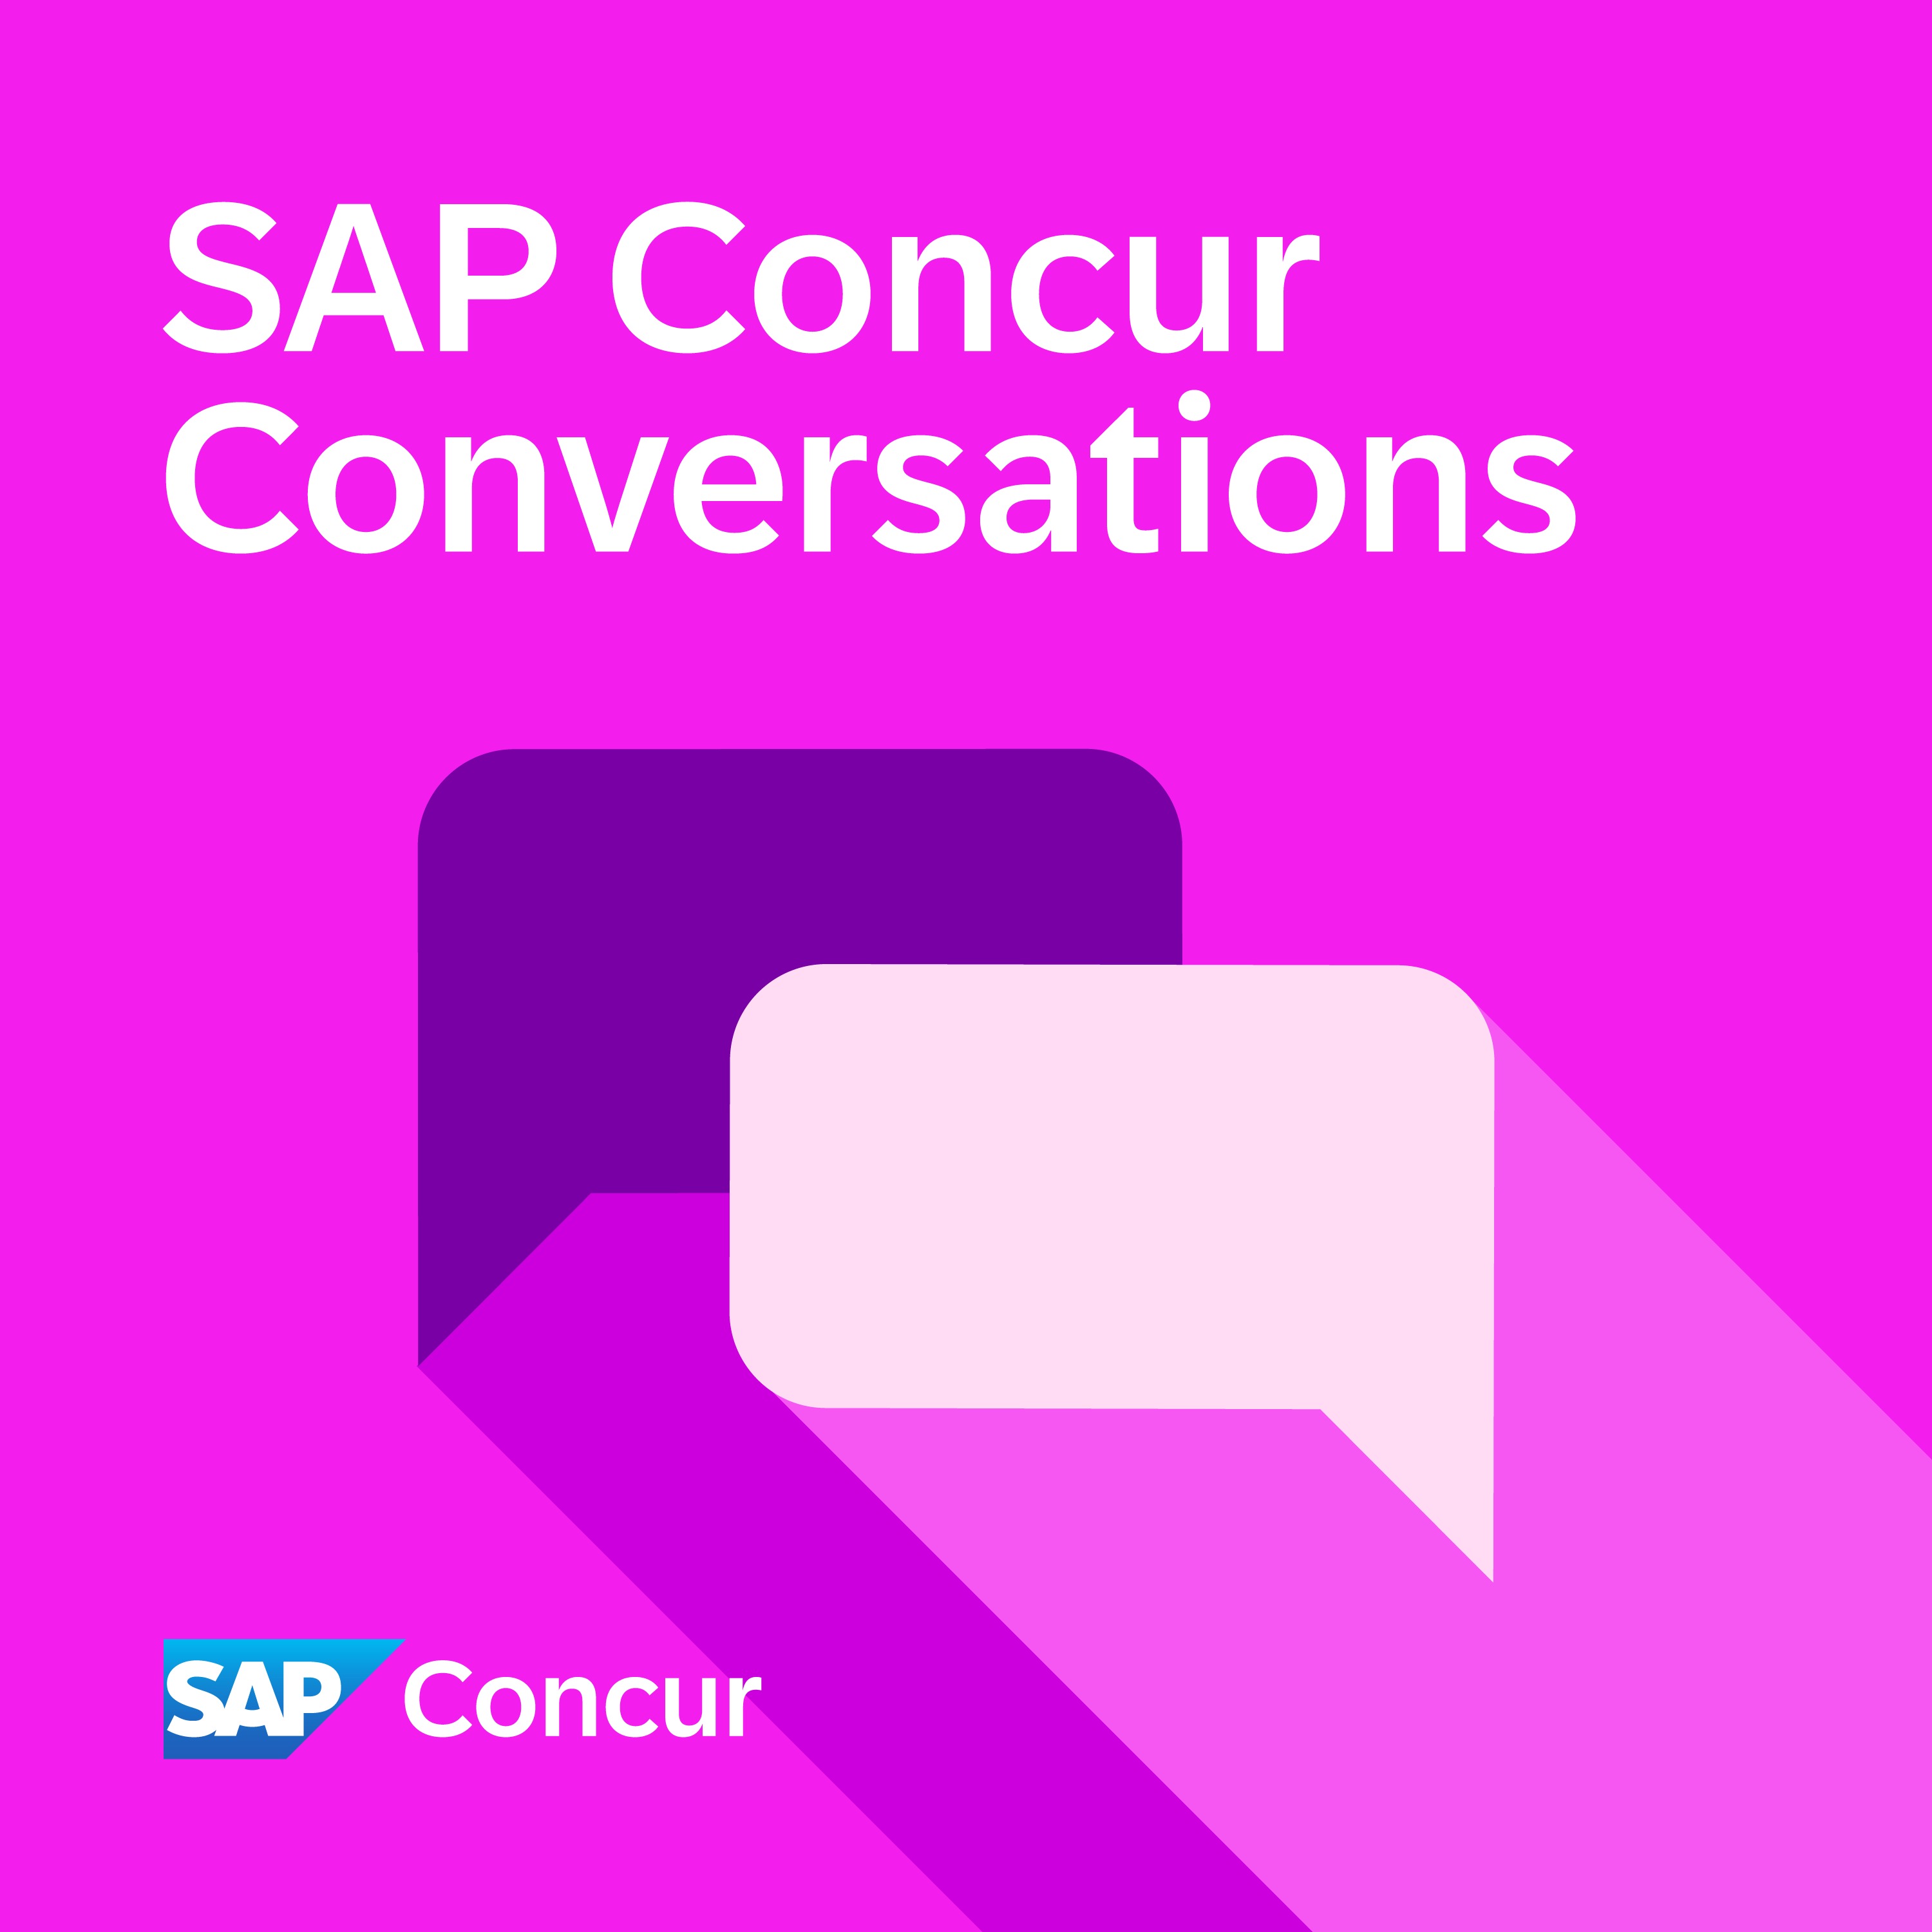 SAP Concur Conversations